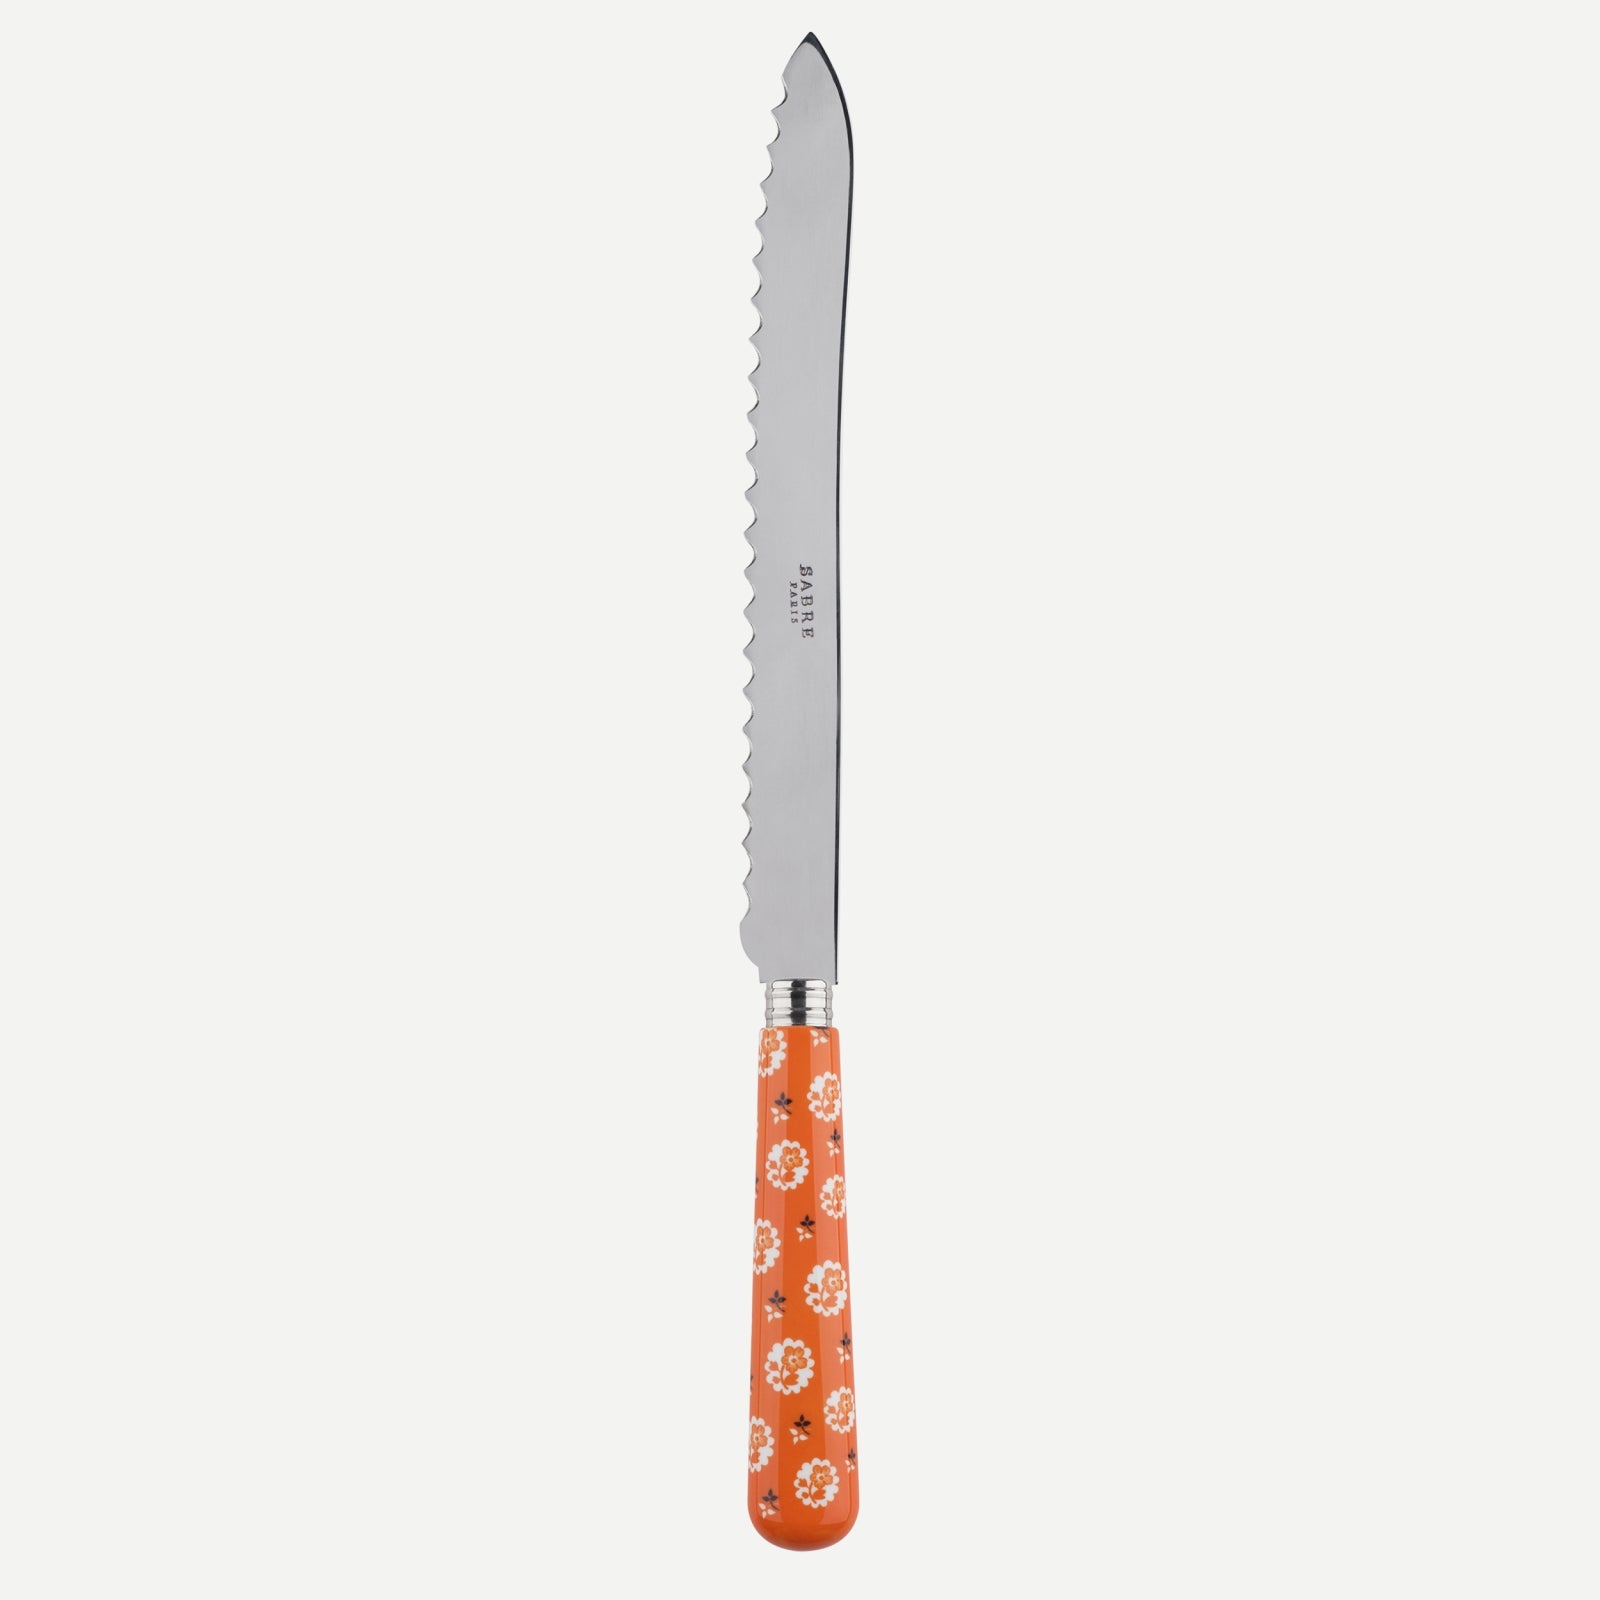 Bread knife - Provencal - Orange